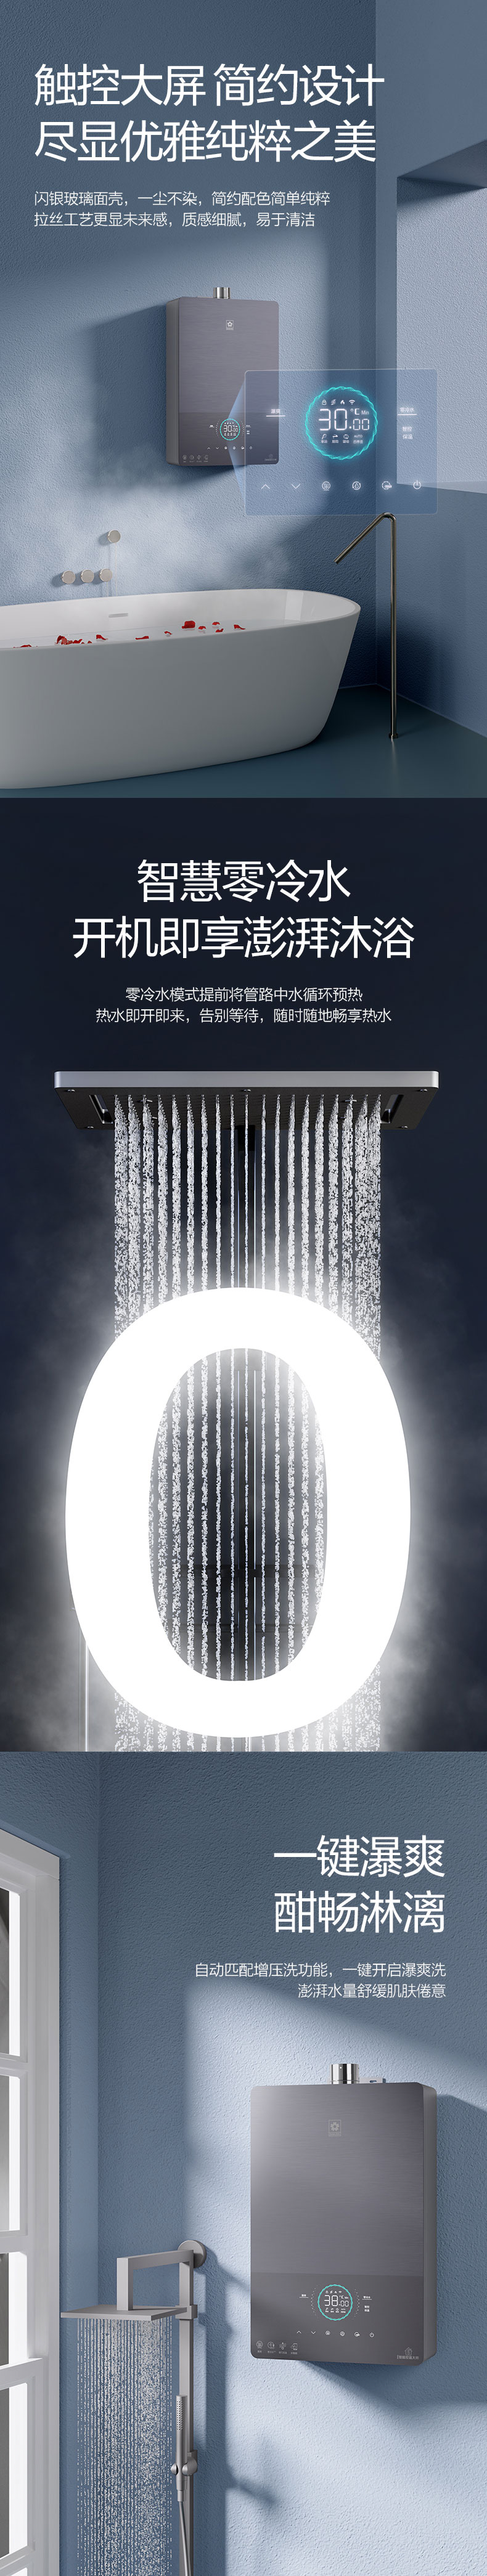 卡塔尔世界杯官方
燃气热水器 - 零冷水